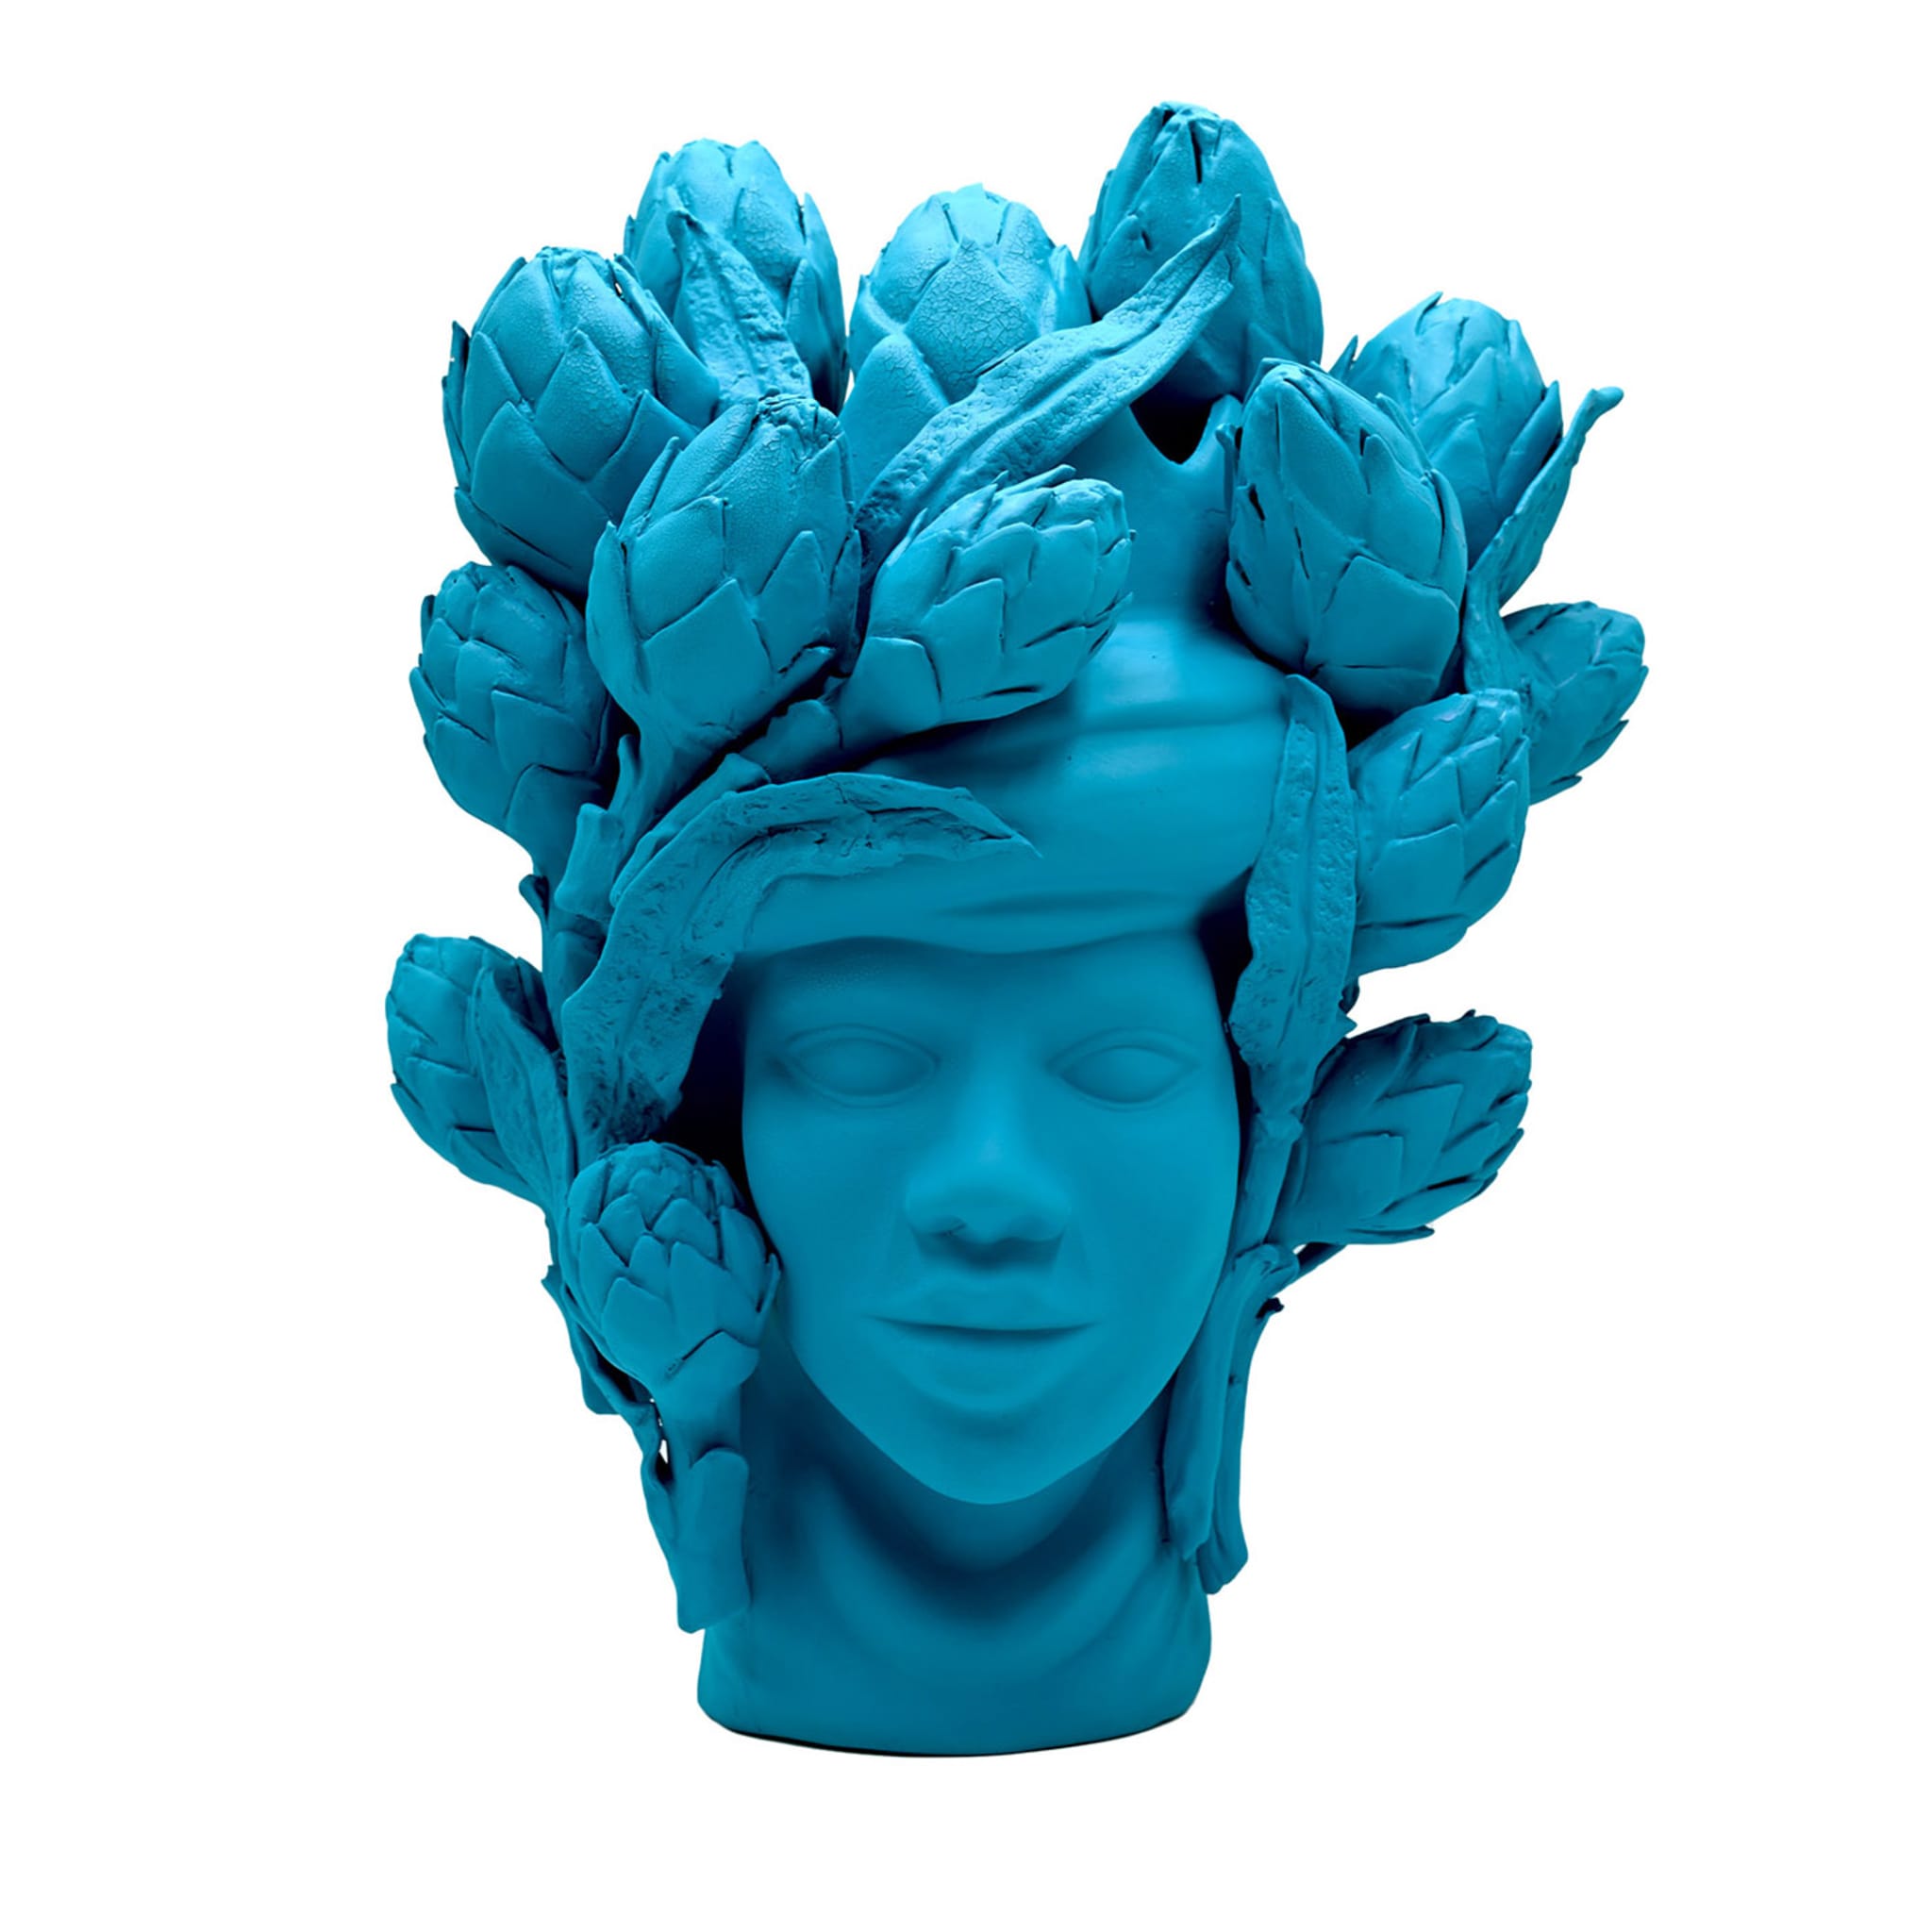 Moor's Head Sculpture